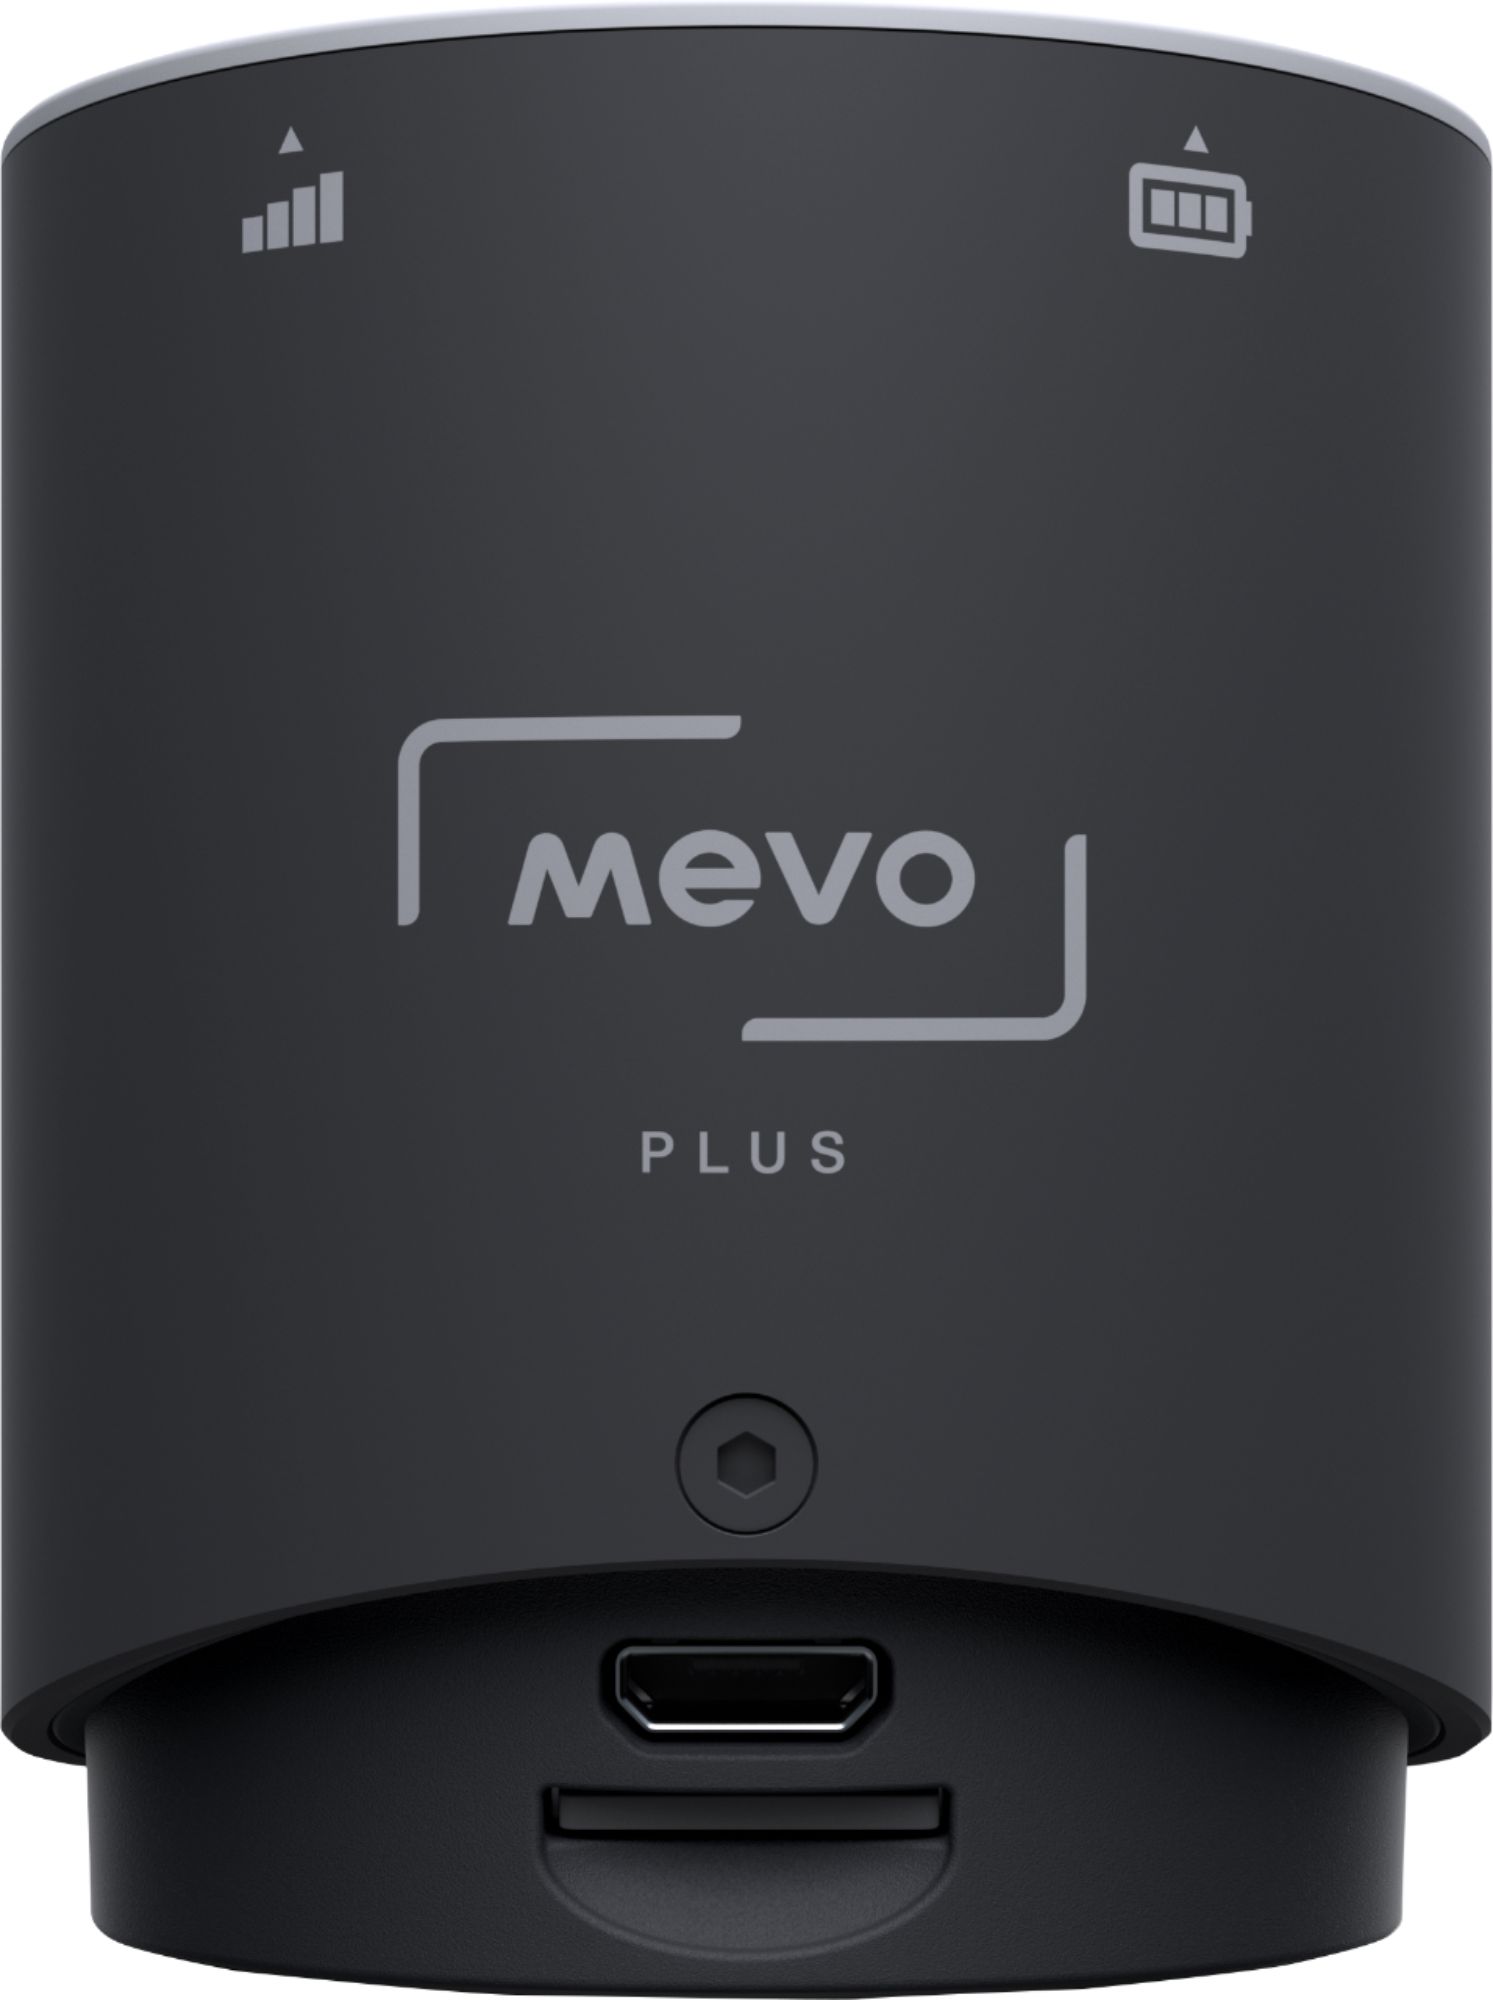 Best Buy Mevo Plus Live Action Camera Black MV2-01A-BL